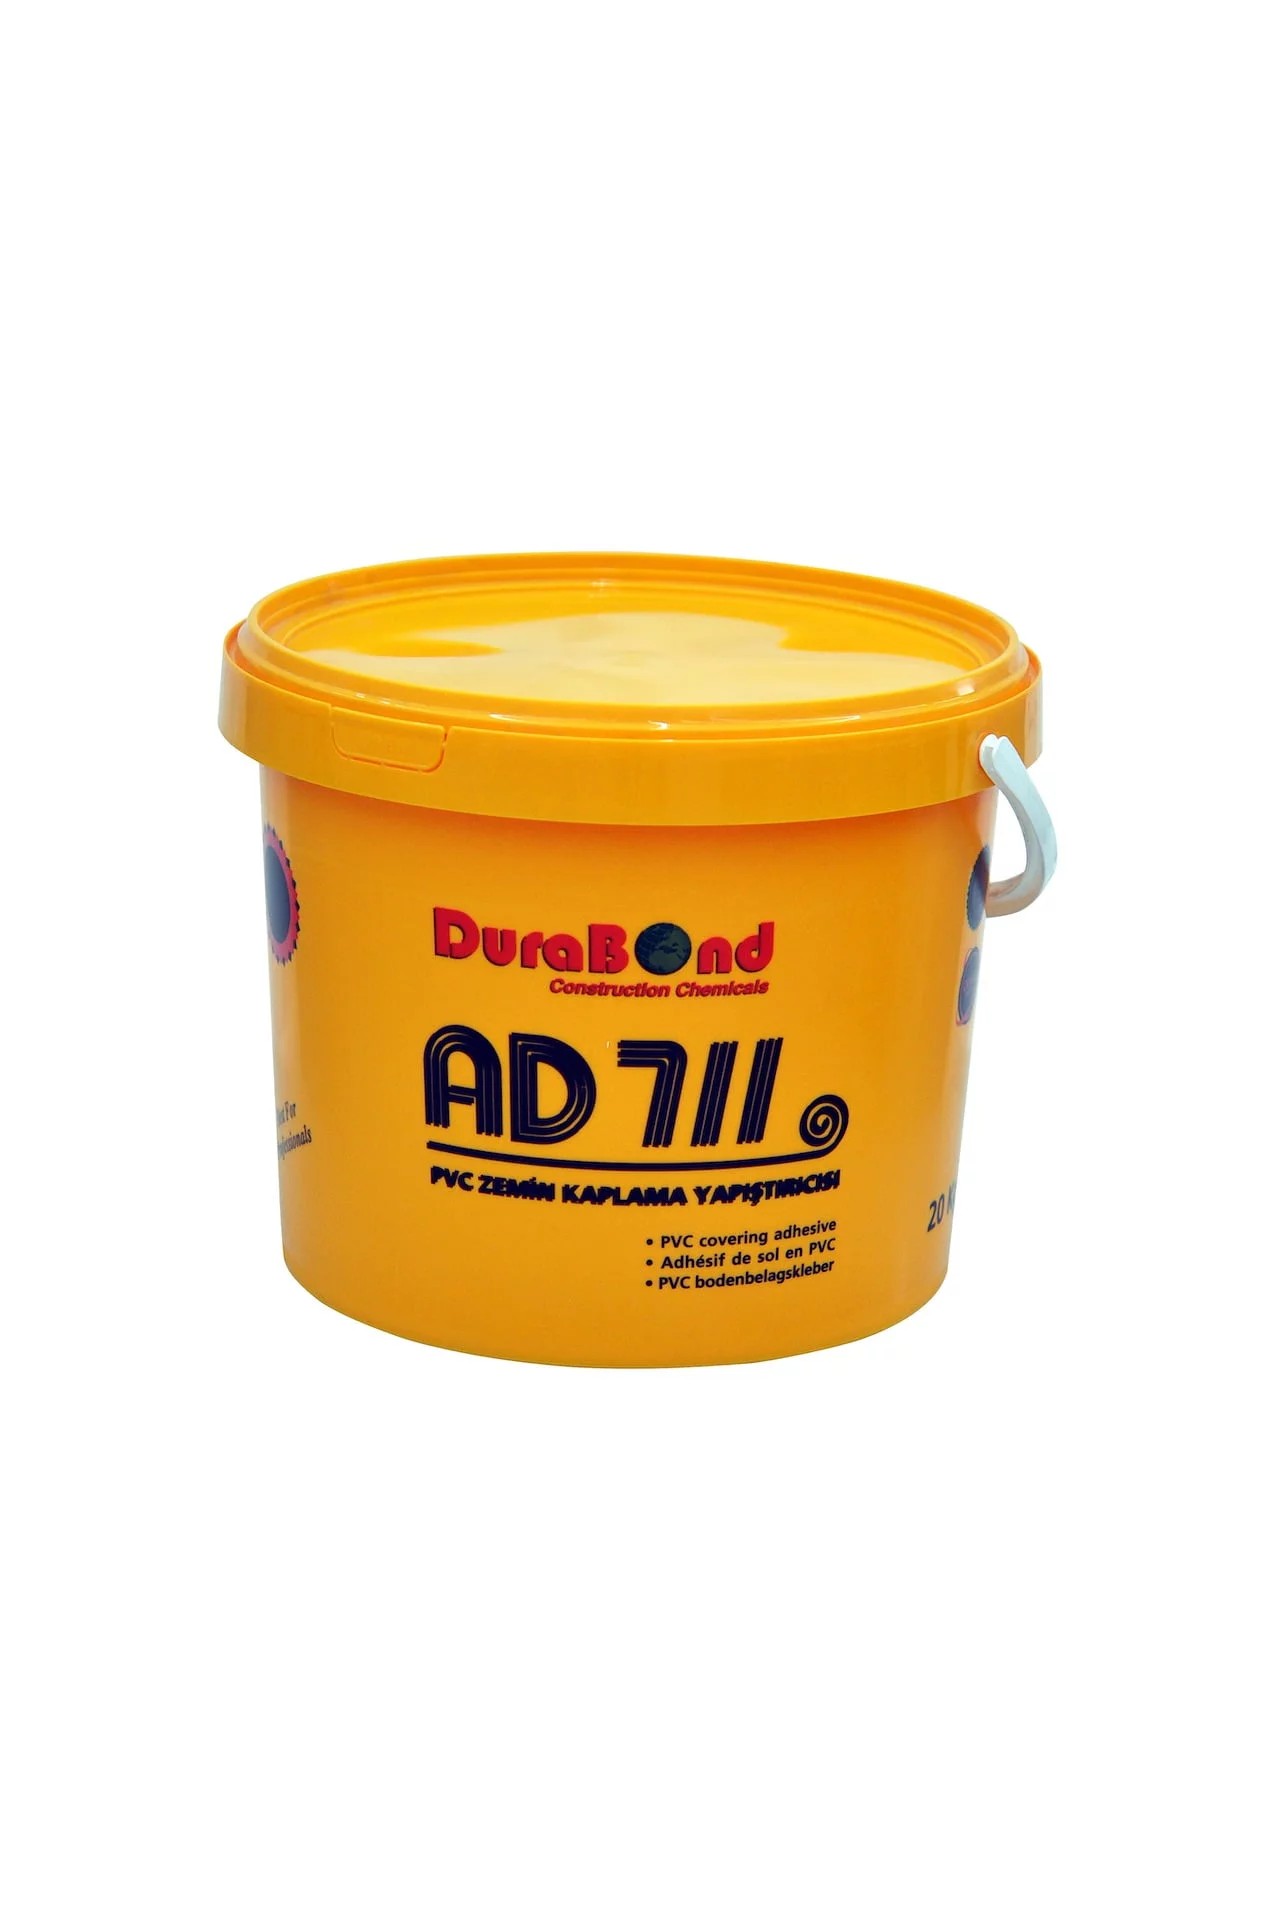 Durabond AD 711Klebstoff für PVC-Bodenbeläge